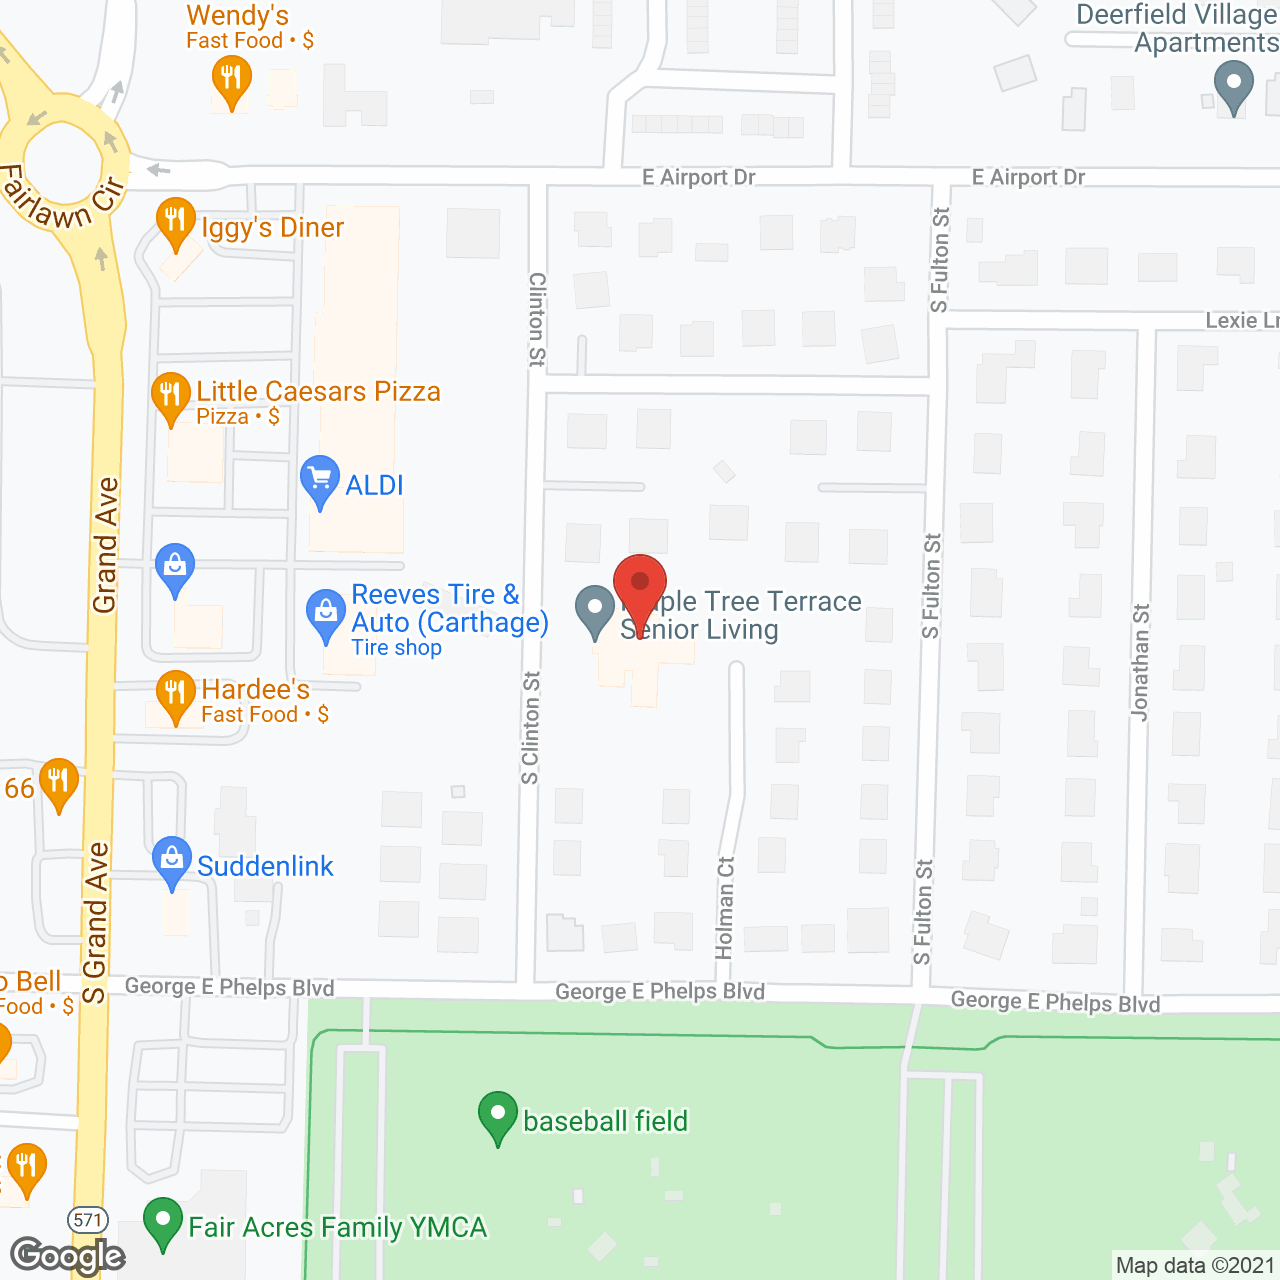 Maple Tree Terrace in google map